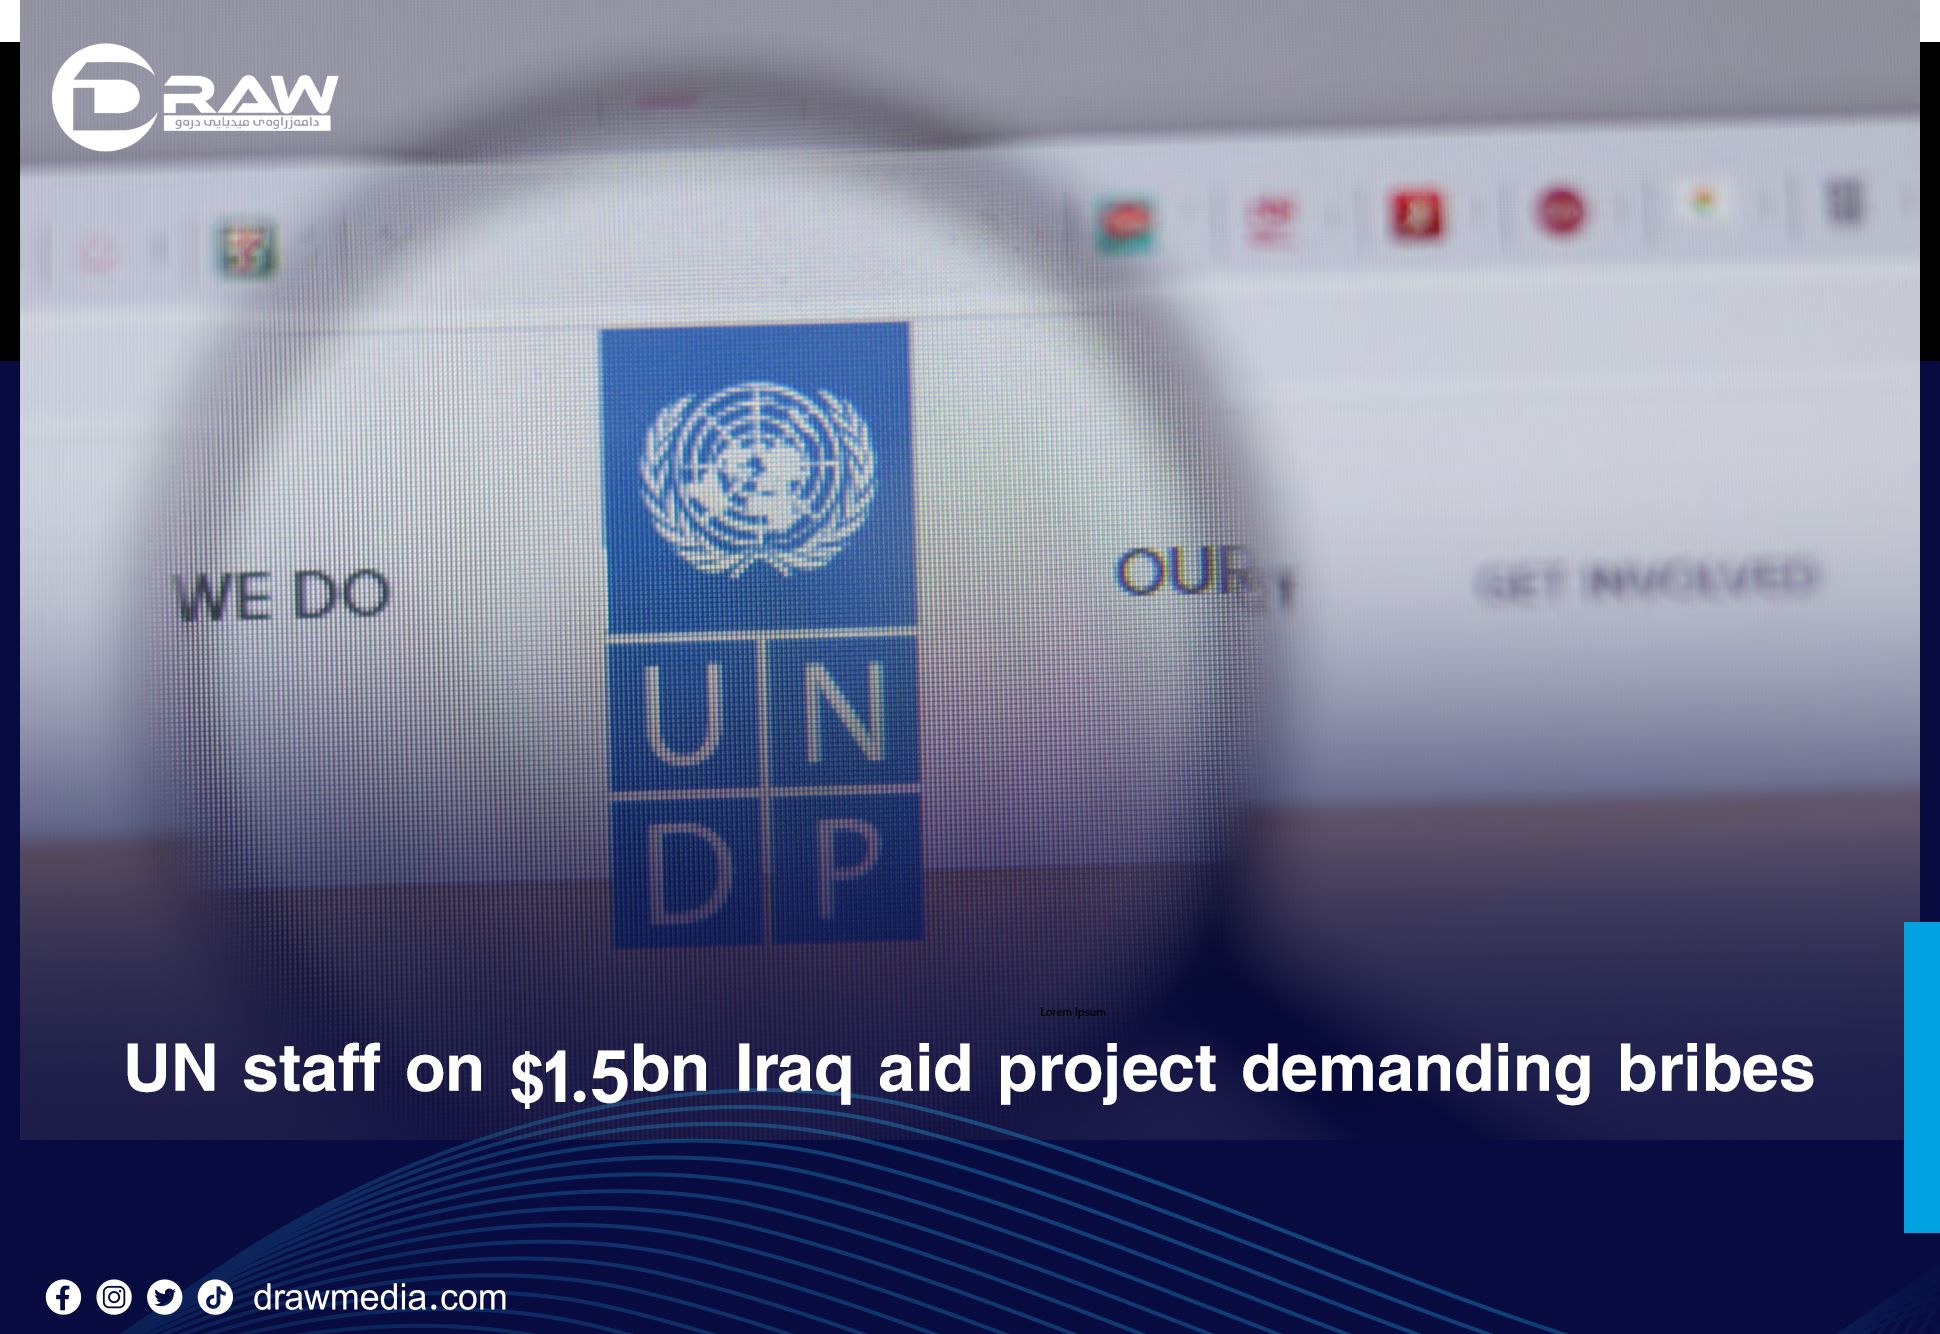 DrawMedia.net / UN staff on $1.5bn Iraq aid project “demanding bribes”